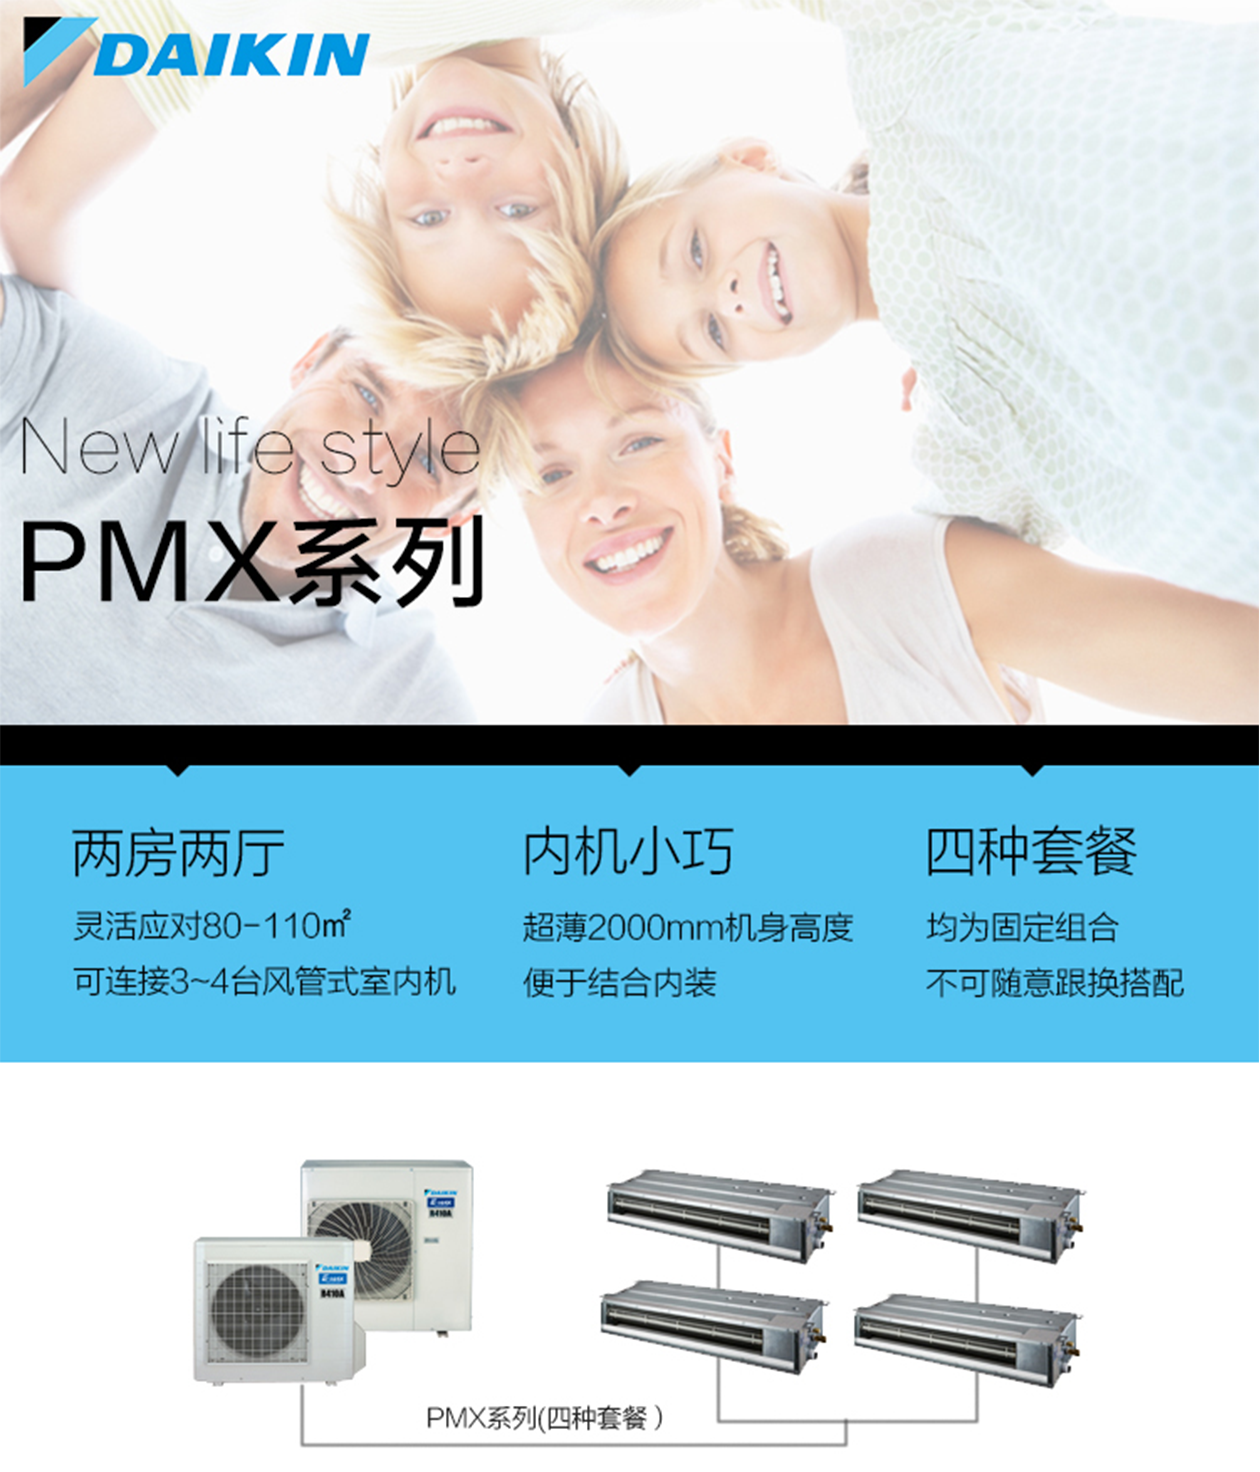 大金空调PMX系列